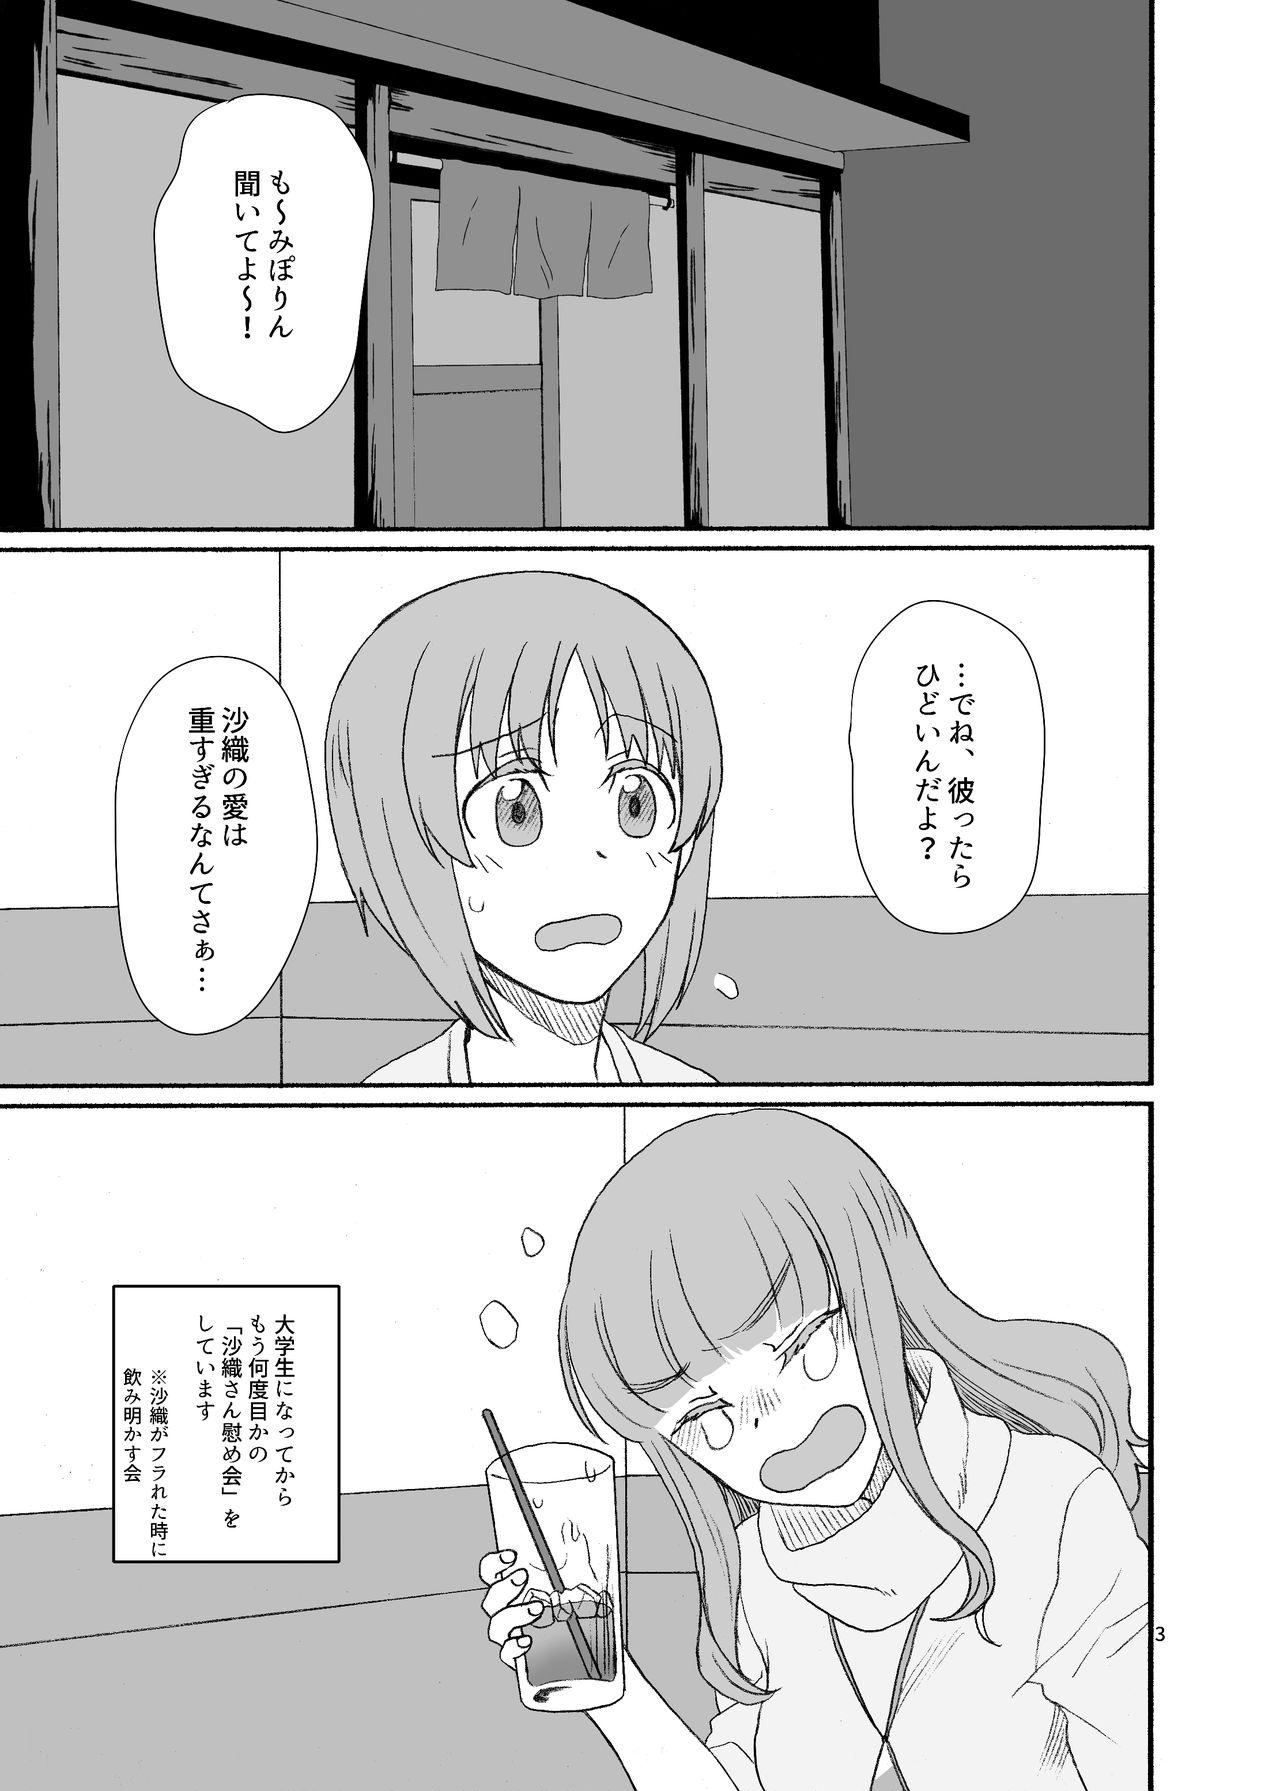 Porn Sluts Saori-san, Tsukiatte Kudasai! - Girls und panzer Spycam - Page 2